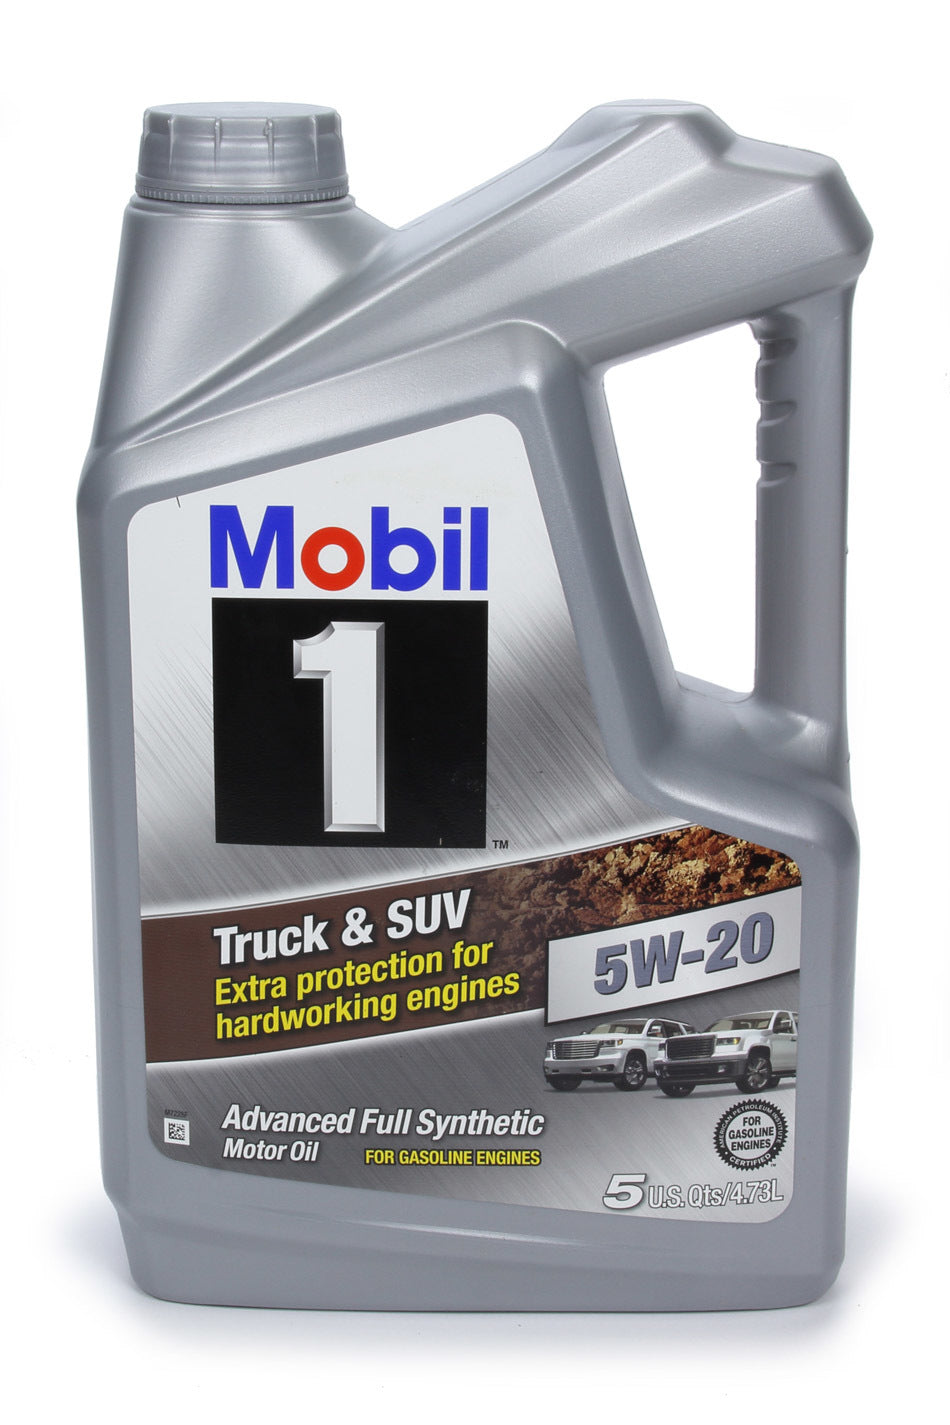 Mobil 1 Truck & SUV Oil 5w20 5 Quart Jug